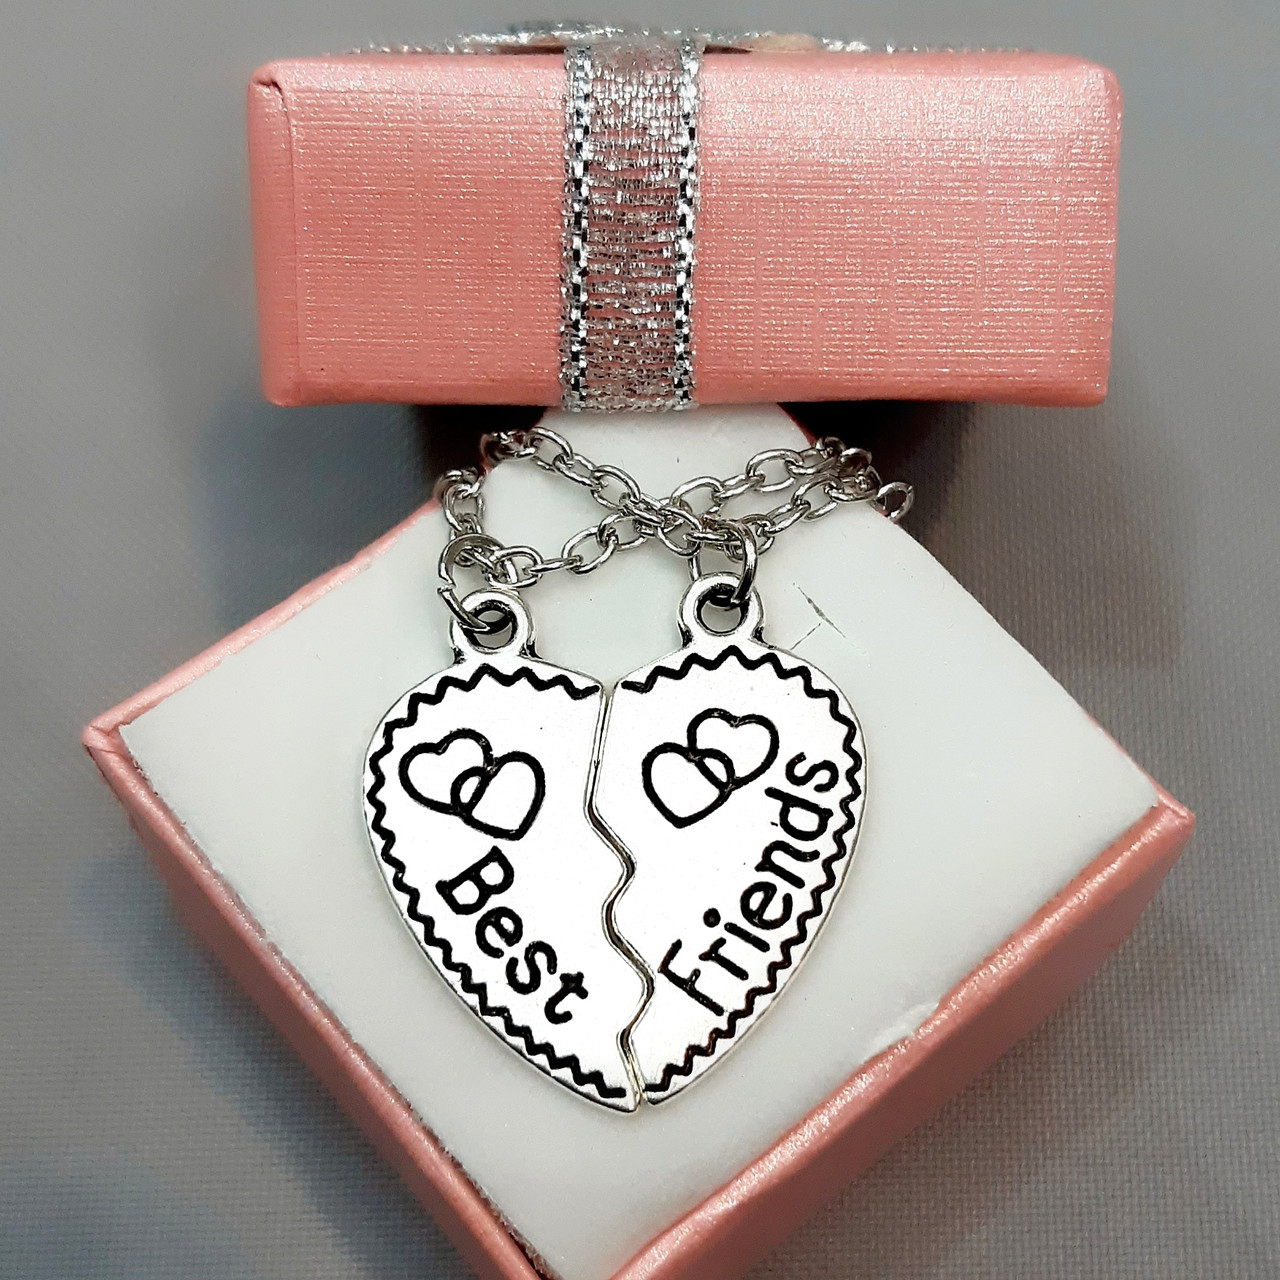 Подарунок кращій подруці сестрі мамі - кулони серце пазли з написом Вest friends колір срібло в яскравій упаковці